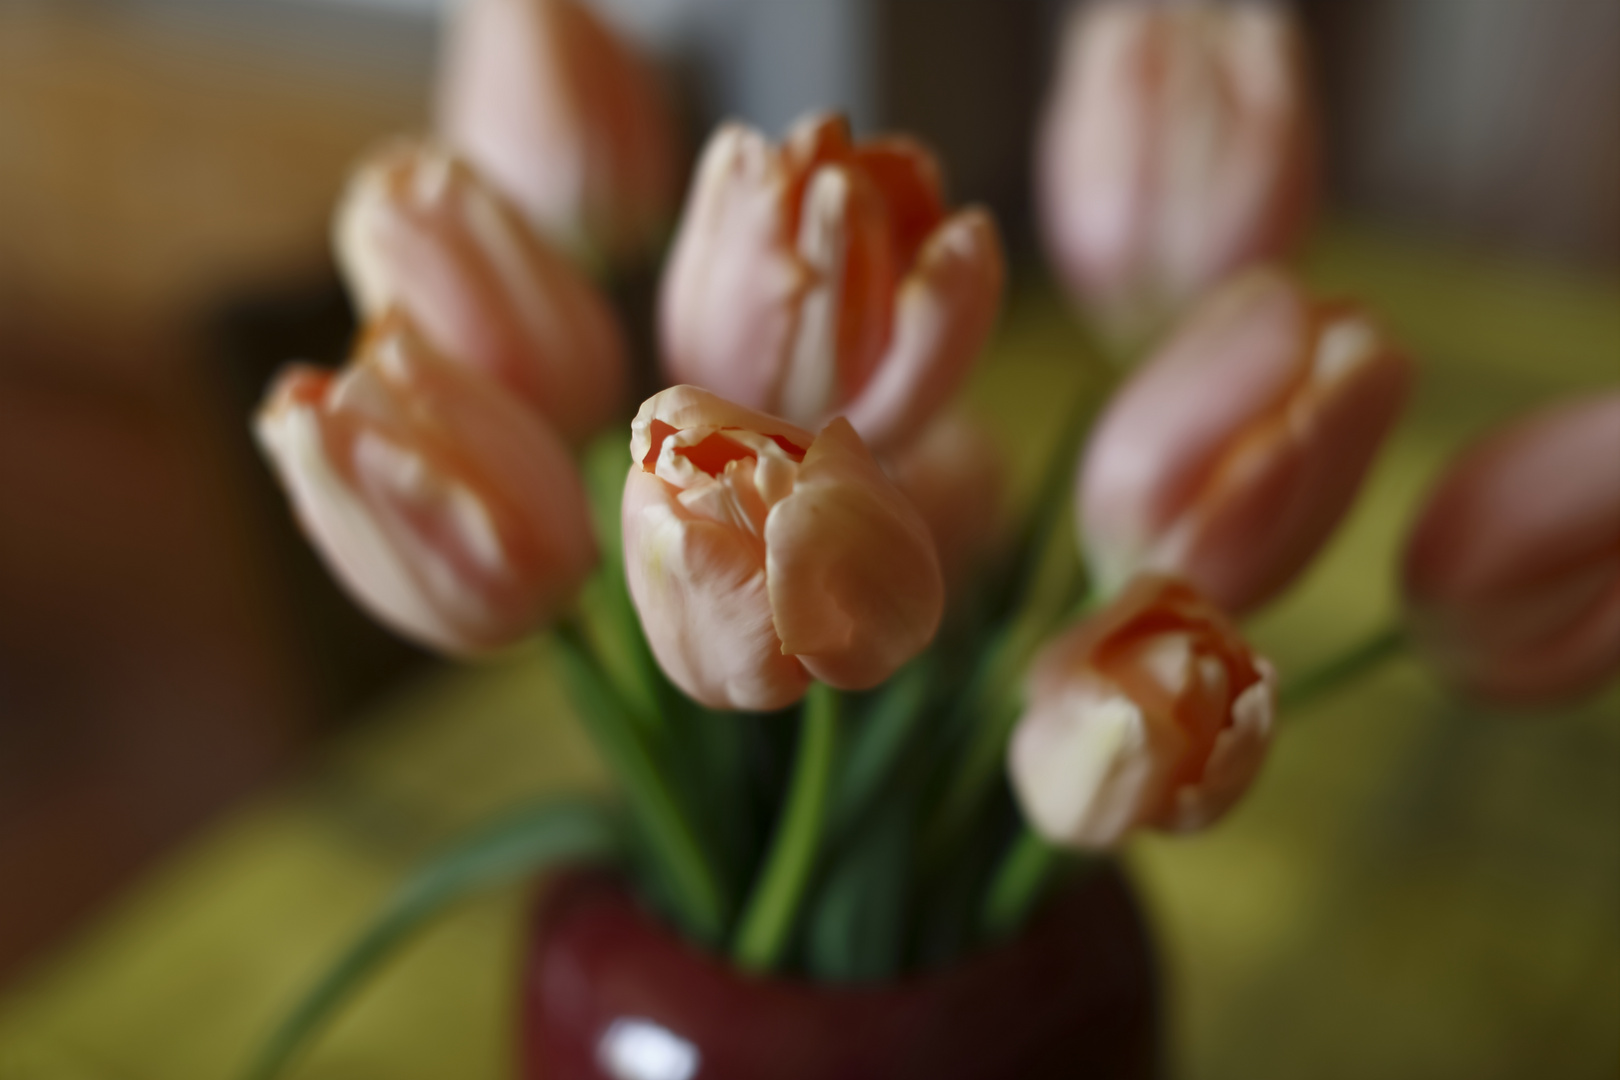 ces tulipes me font penser.....